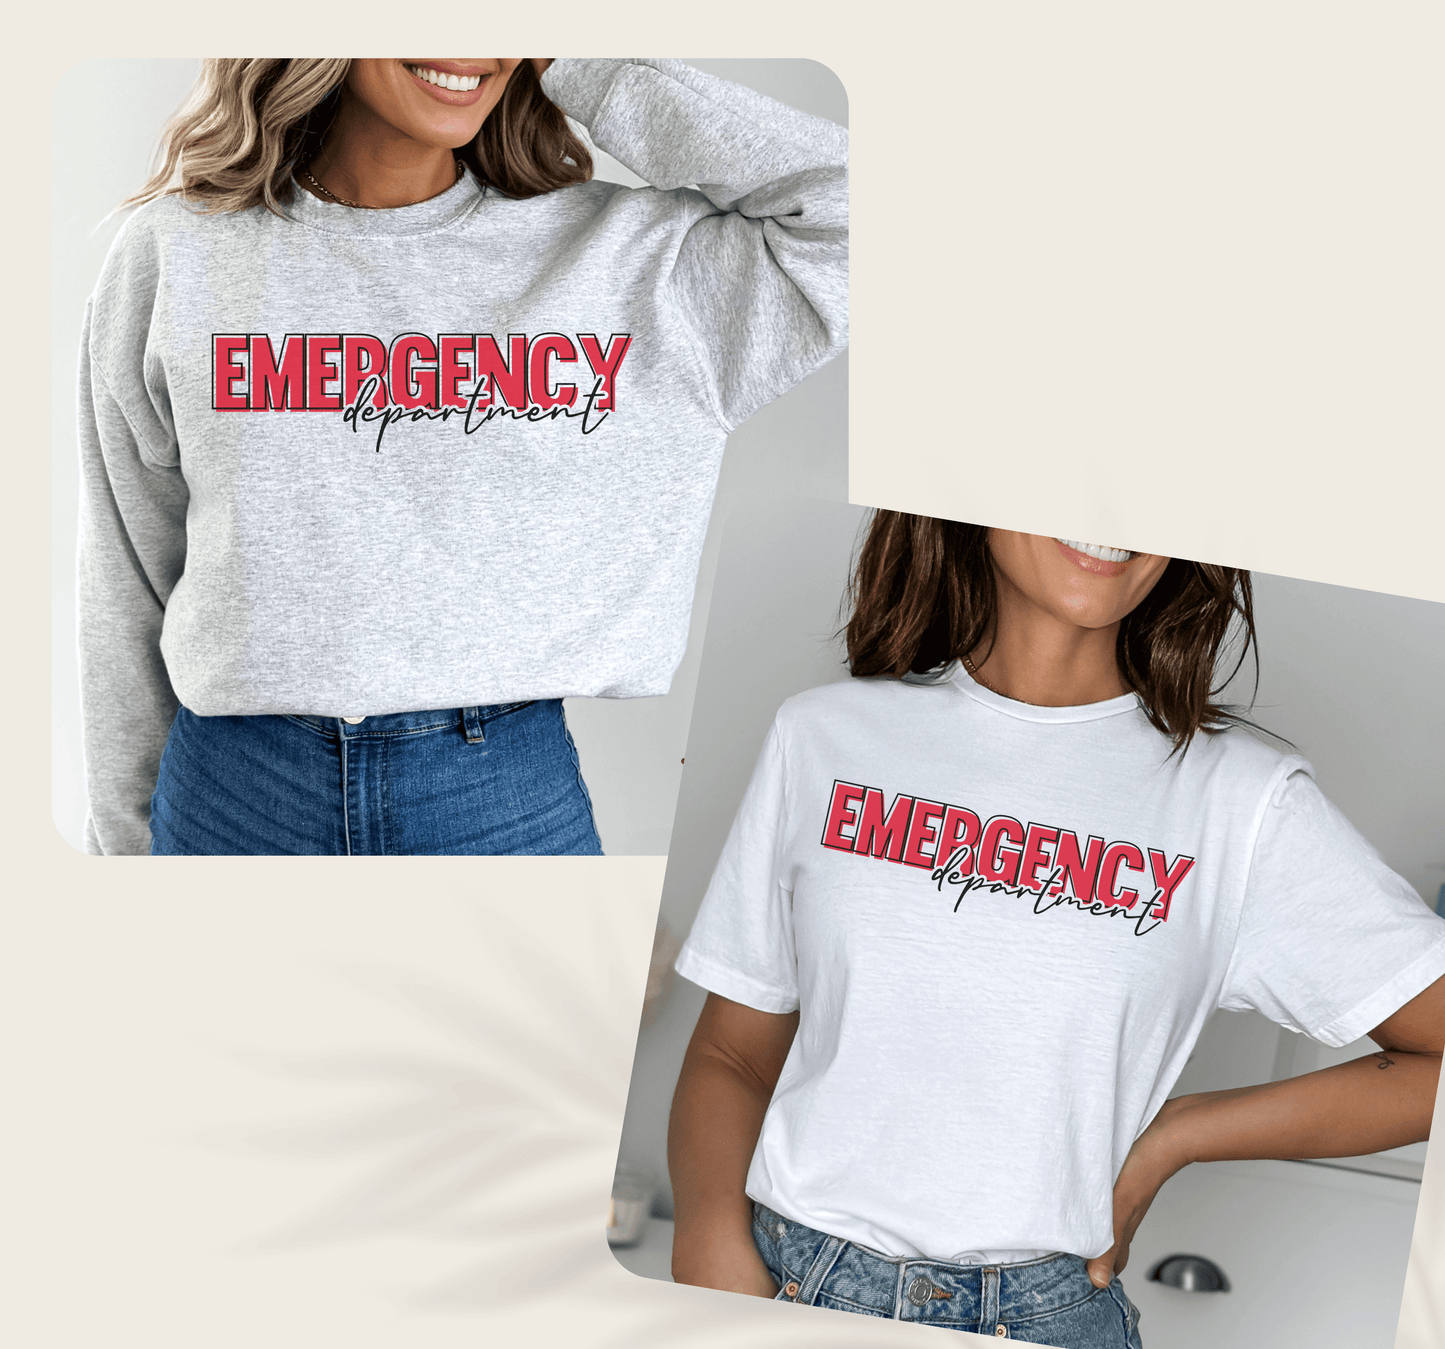 Emergency Department Shirt - BentleyBlueCo